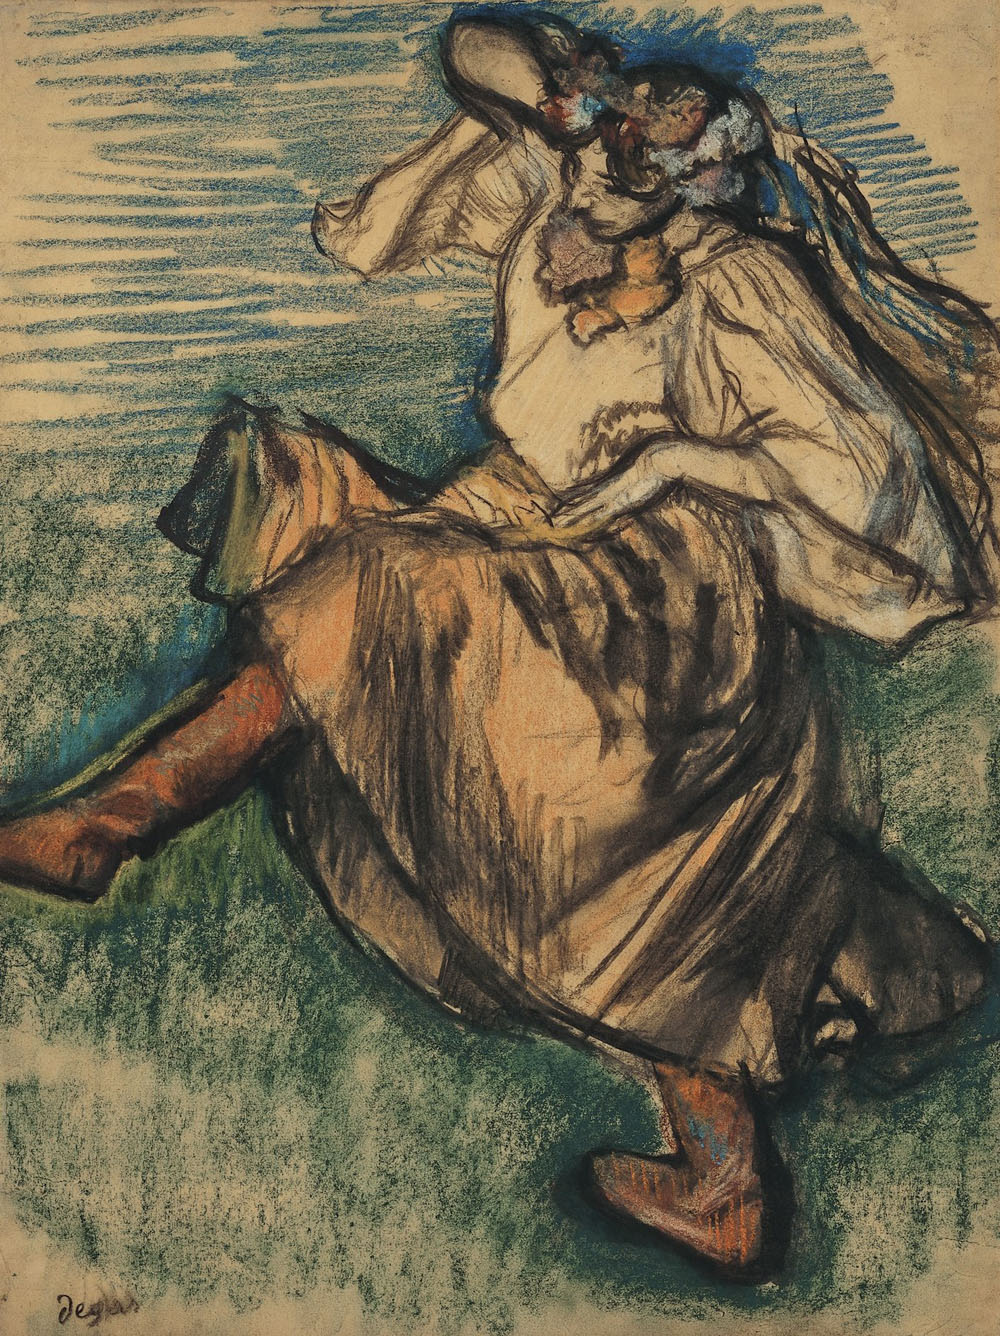 Эдгар Дега. "Русская танцовщица". Около 1899.